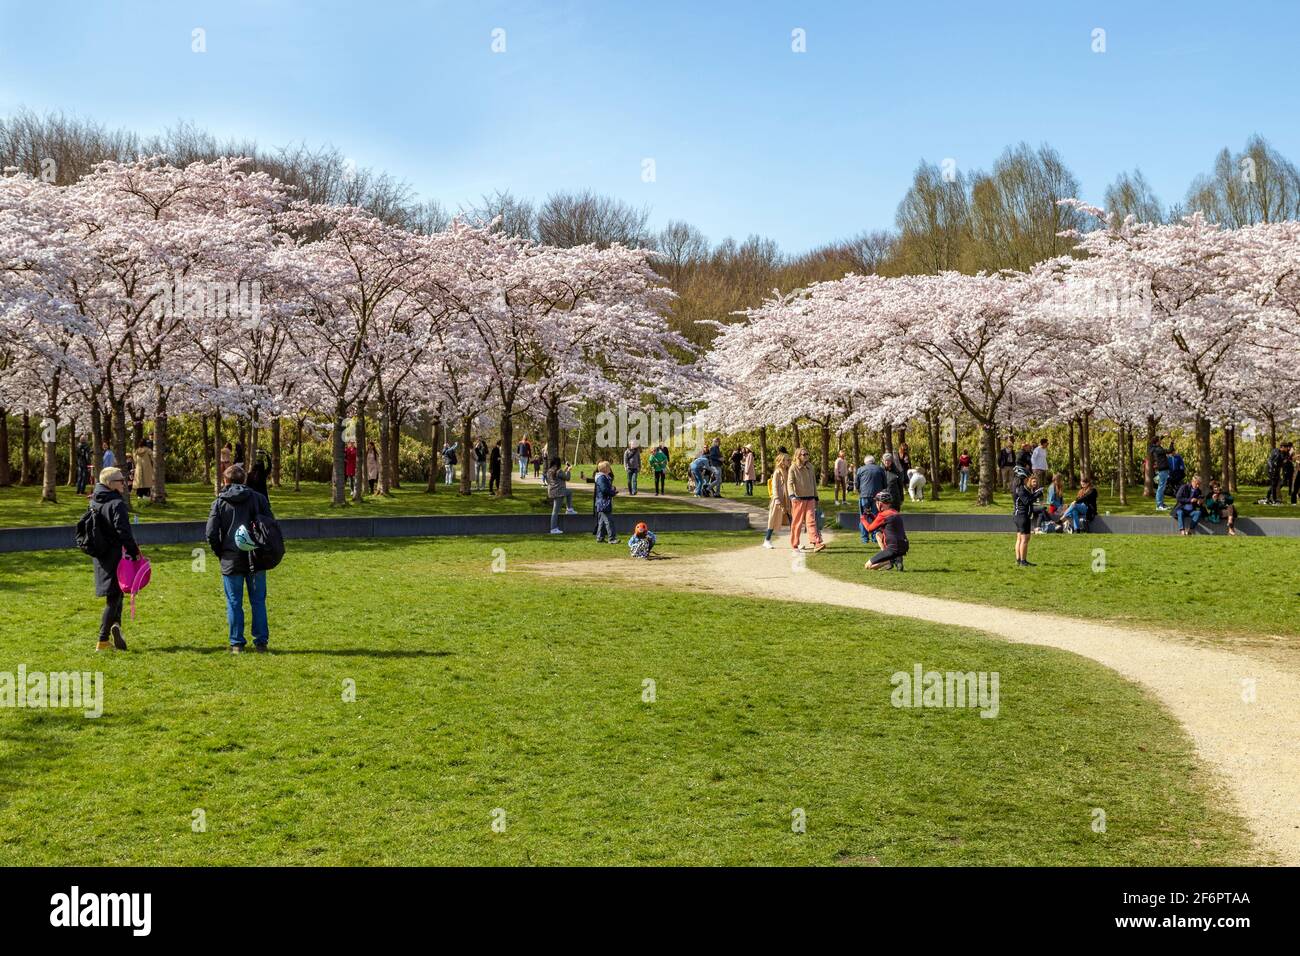 Árboles de cereza ( Prunus × yedoensis ) en flor, Bloesempark, Amsterdamse bos, Amstelveen, Holanda del Norte, Países Bajos Foto de stock